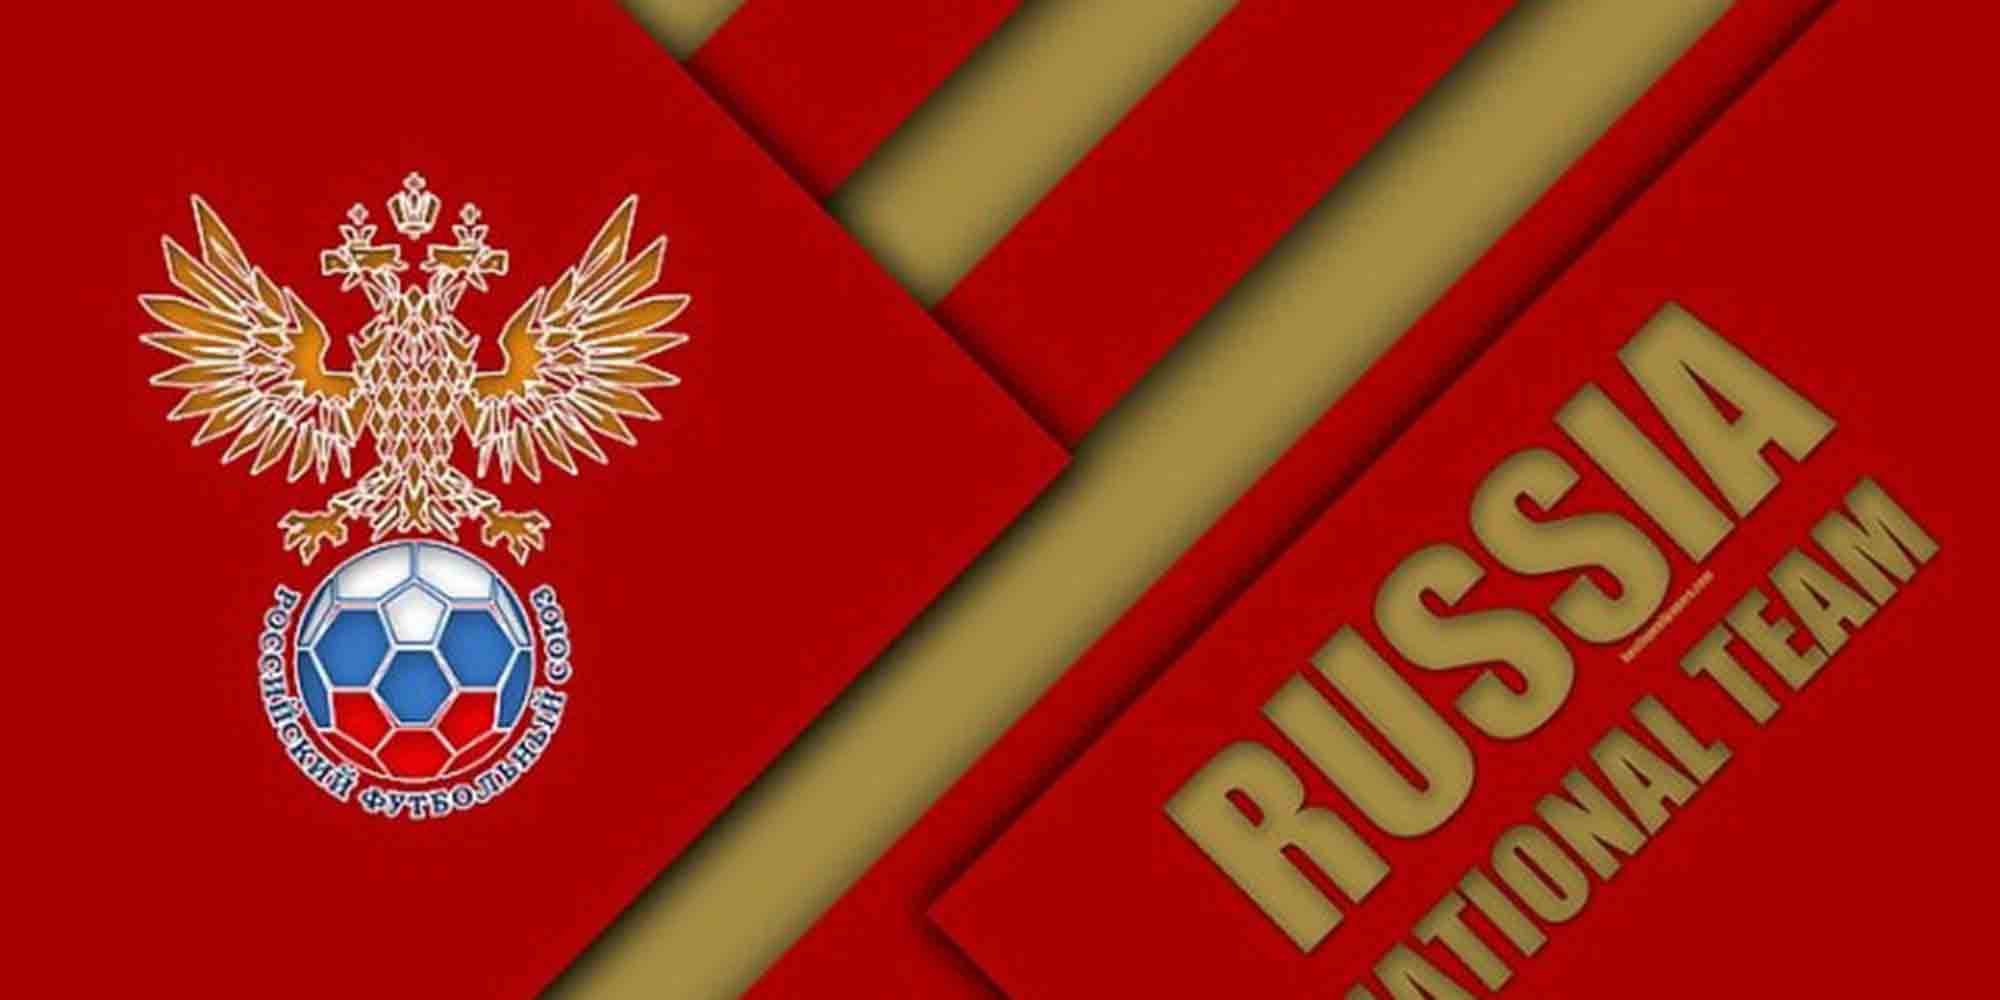 Το σήμα της ποδοσφαιρικής Ομοσπονδίας της Ρωσίας